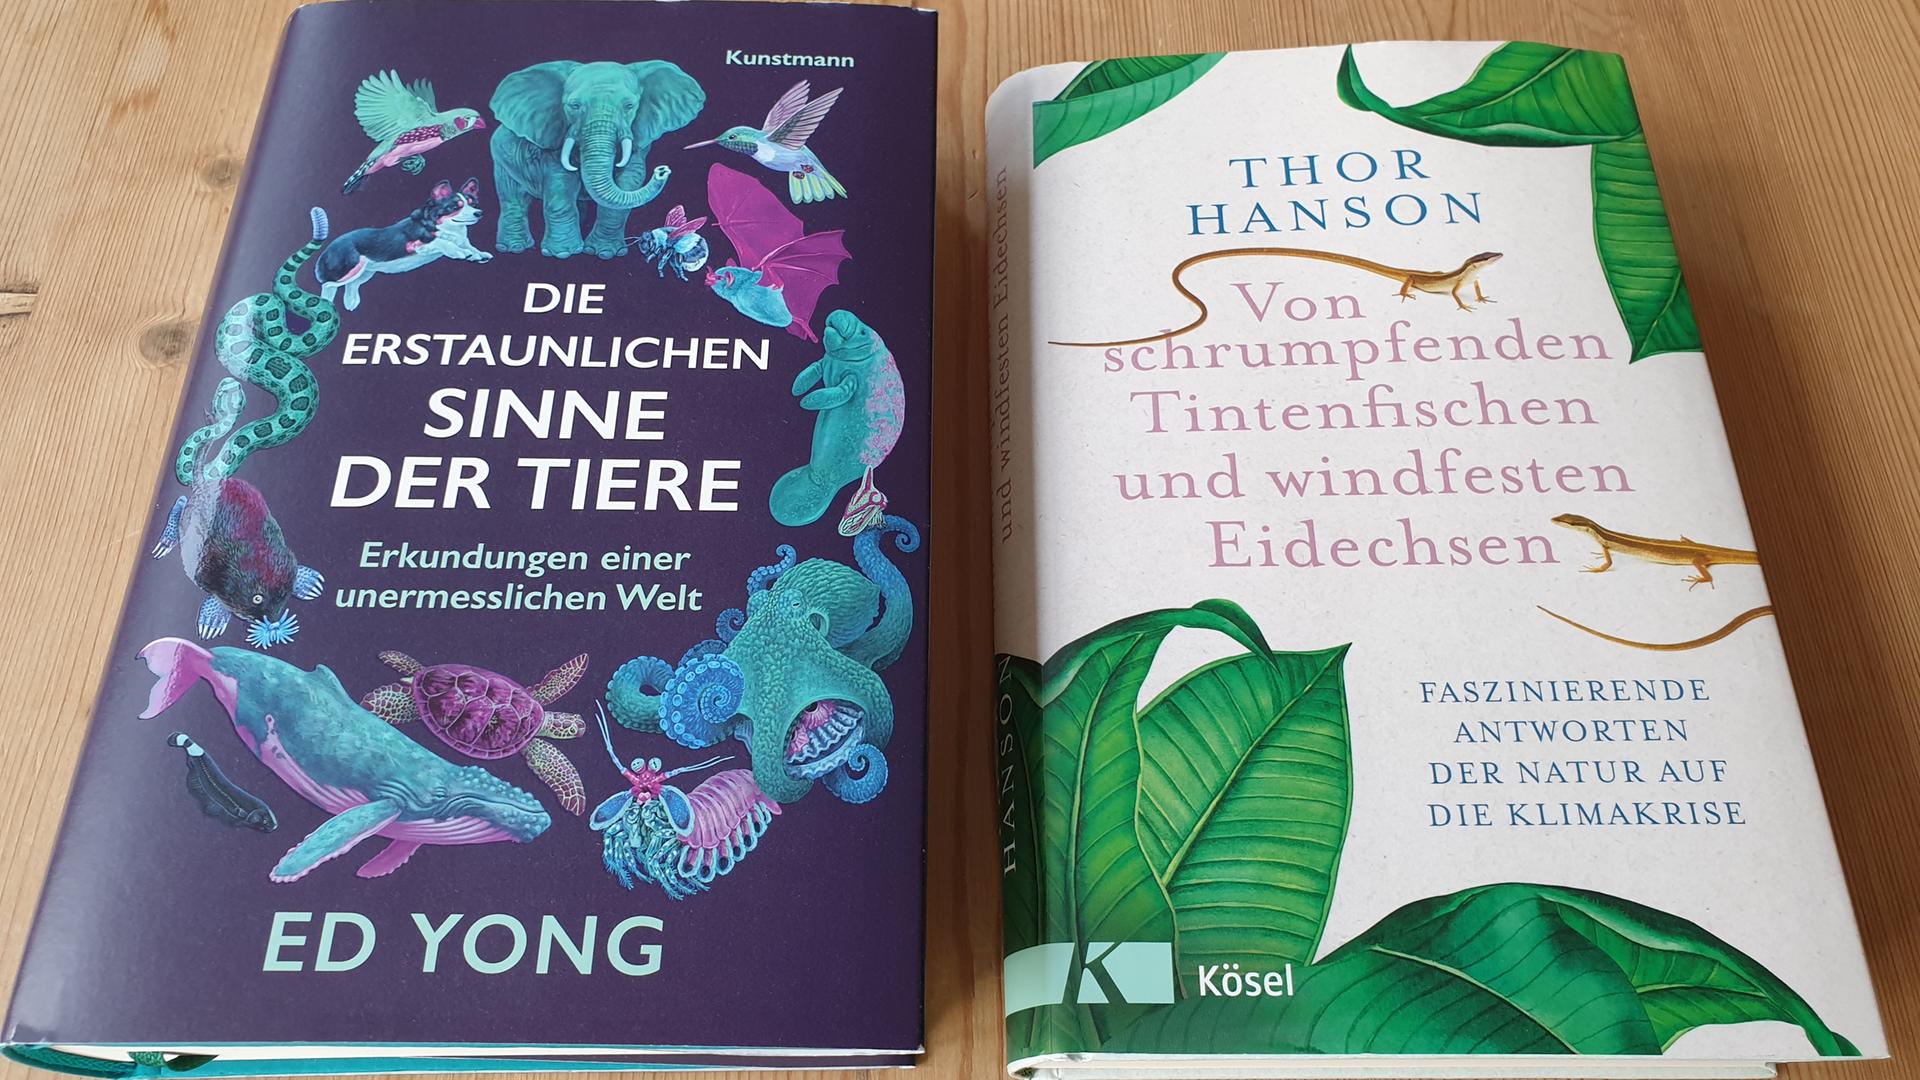 Die Cover der Bücher "Die erstaunlichen Sinne der Tiere" von Ed Yong und "Von schrumpfenden Tintenfischen und windfesten Eidechsen" von Thor Hanson.